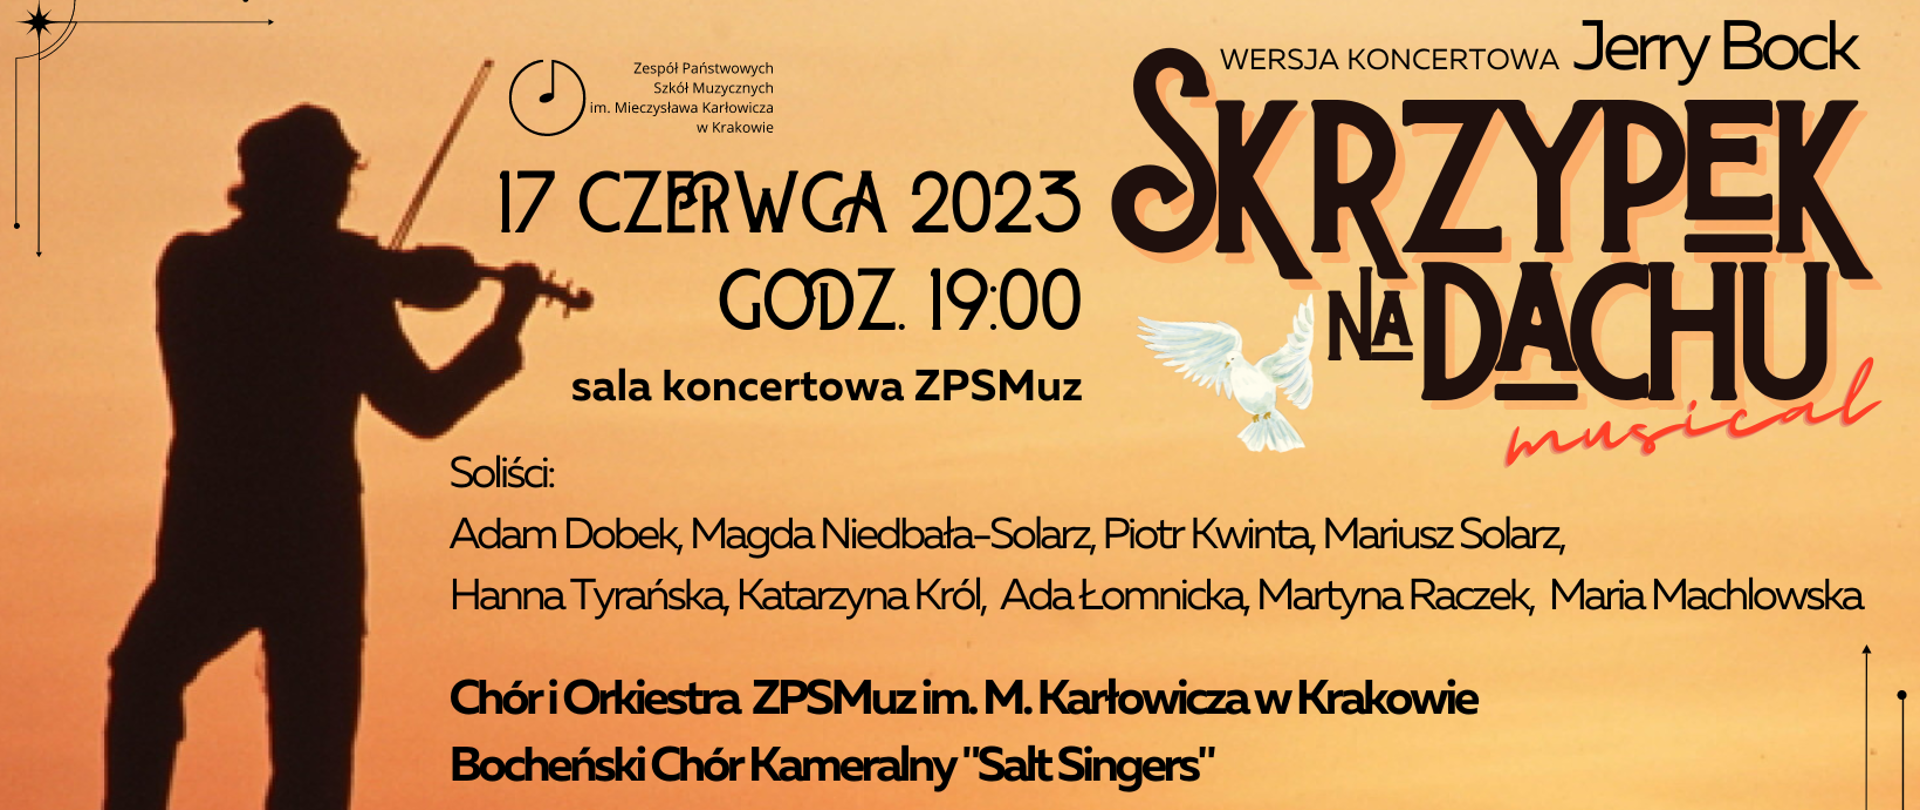 Plakat informujący o wykonaniu wersji koncertowej musicalu "Skrzypek na dachu". Koncert będzie miał miejsce 17 czerwca 2023 roku o godzinie 19:00 w sali koncertowej ZPSMuz.